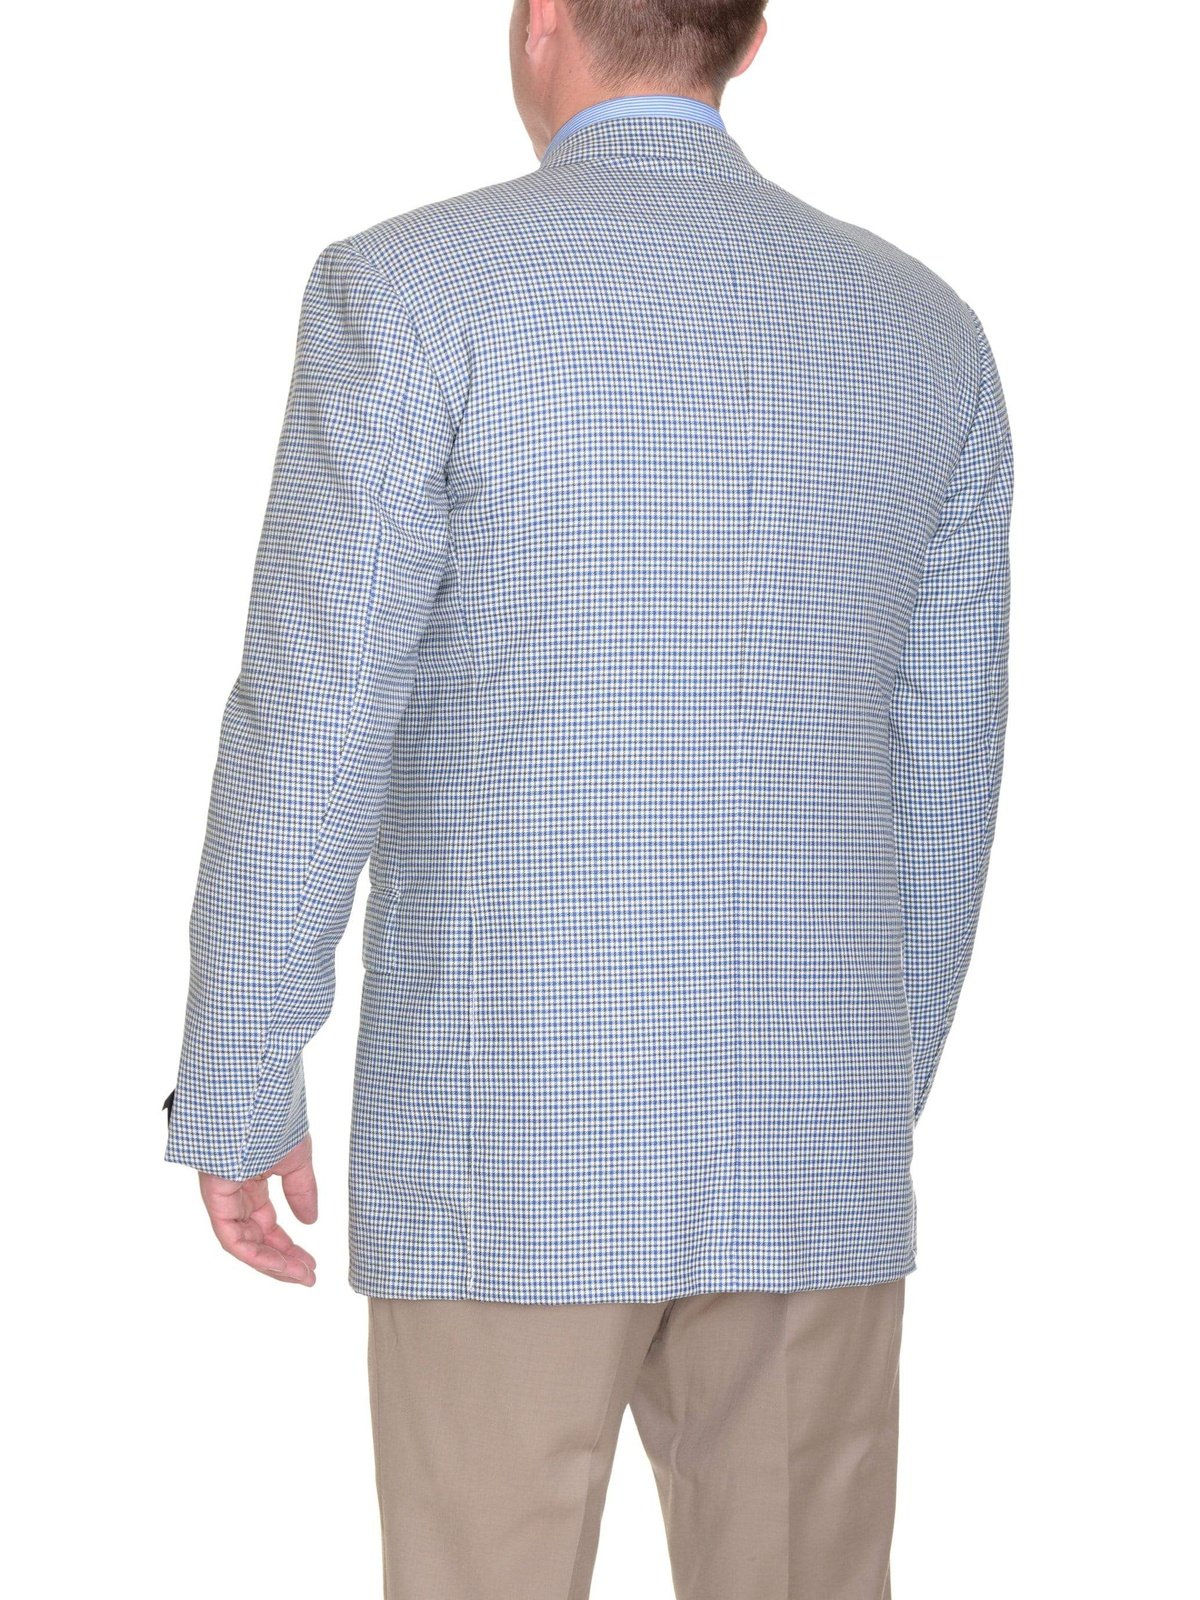 Sartoria Partenopea BLAZERS Sartoria Partenopea 40R 50 White Blue Green Check Wool 3 Button Men&#39;s Sportcoat